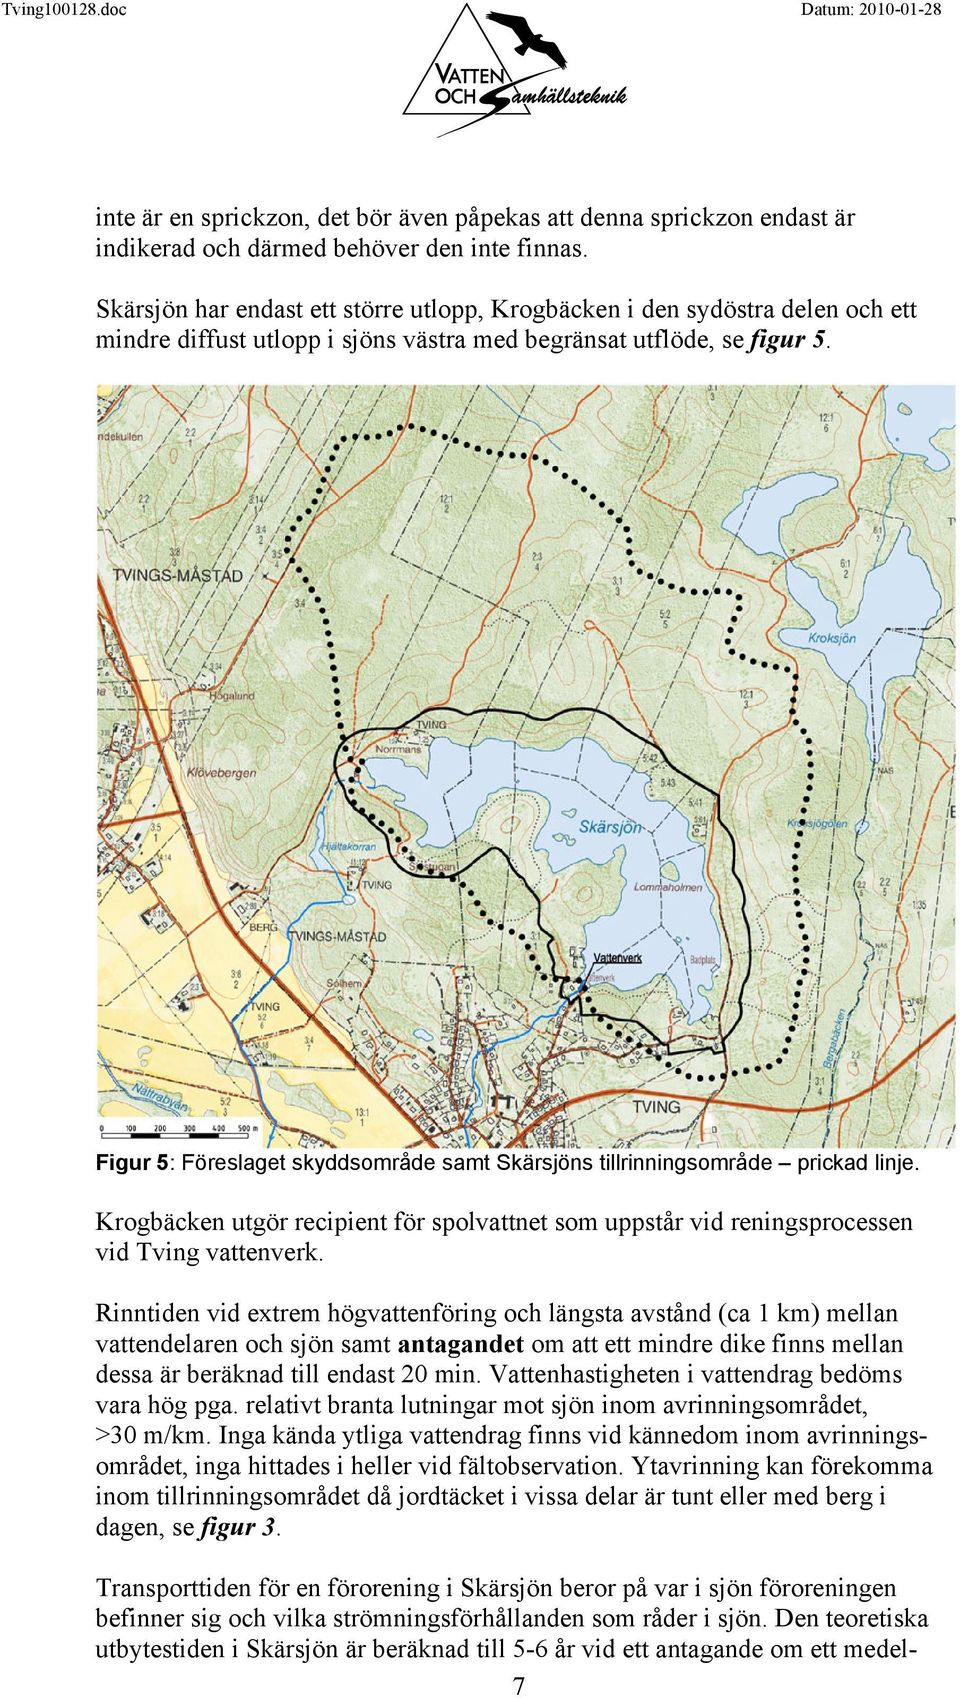 Figur 5: Föreslaget skyddsområde samt Skärsjöns tillrinningsområde prickad linje. Krogbäcken utgör recipient för spolvattnet som uppstår vid reningsprocessen vid Tving vattenverk.